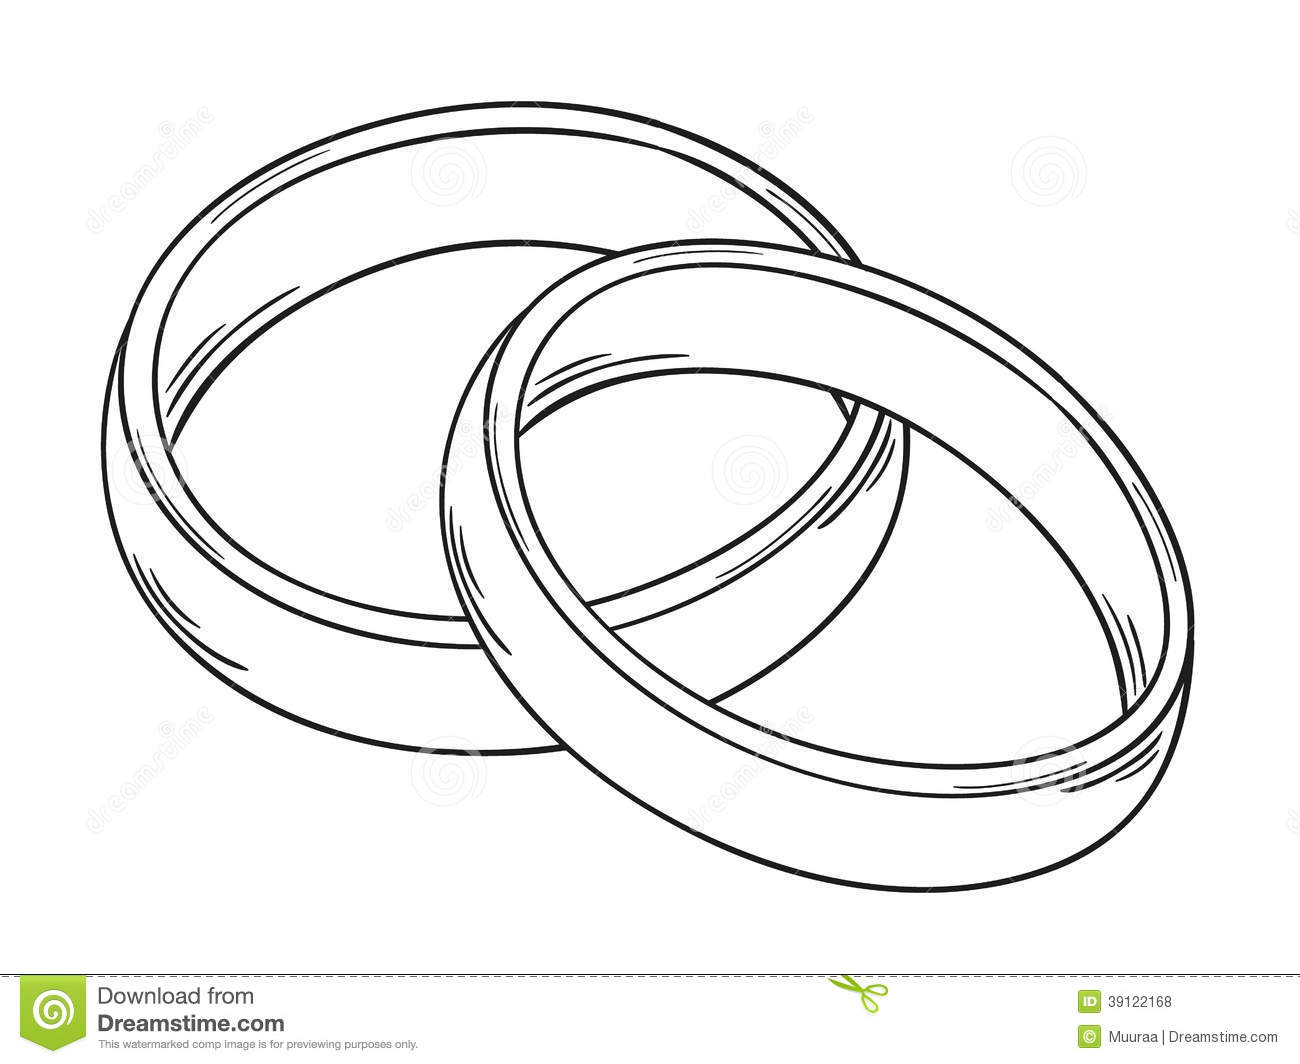 Interlocking Wedding Rings Drawing at